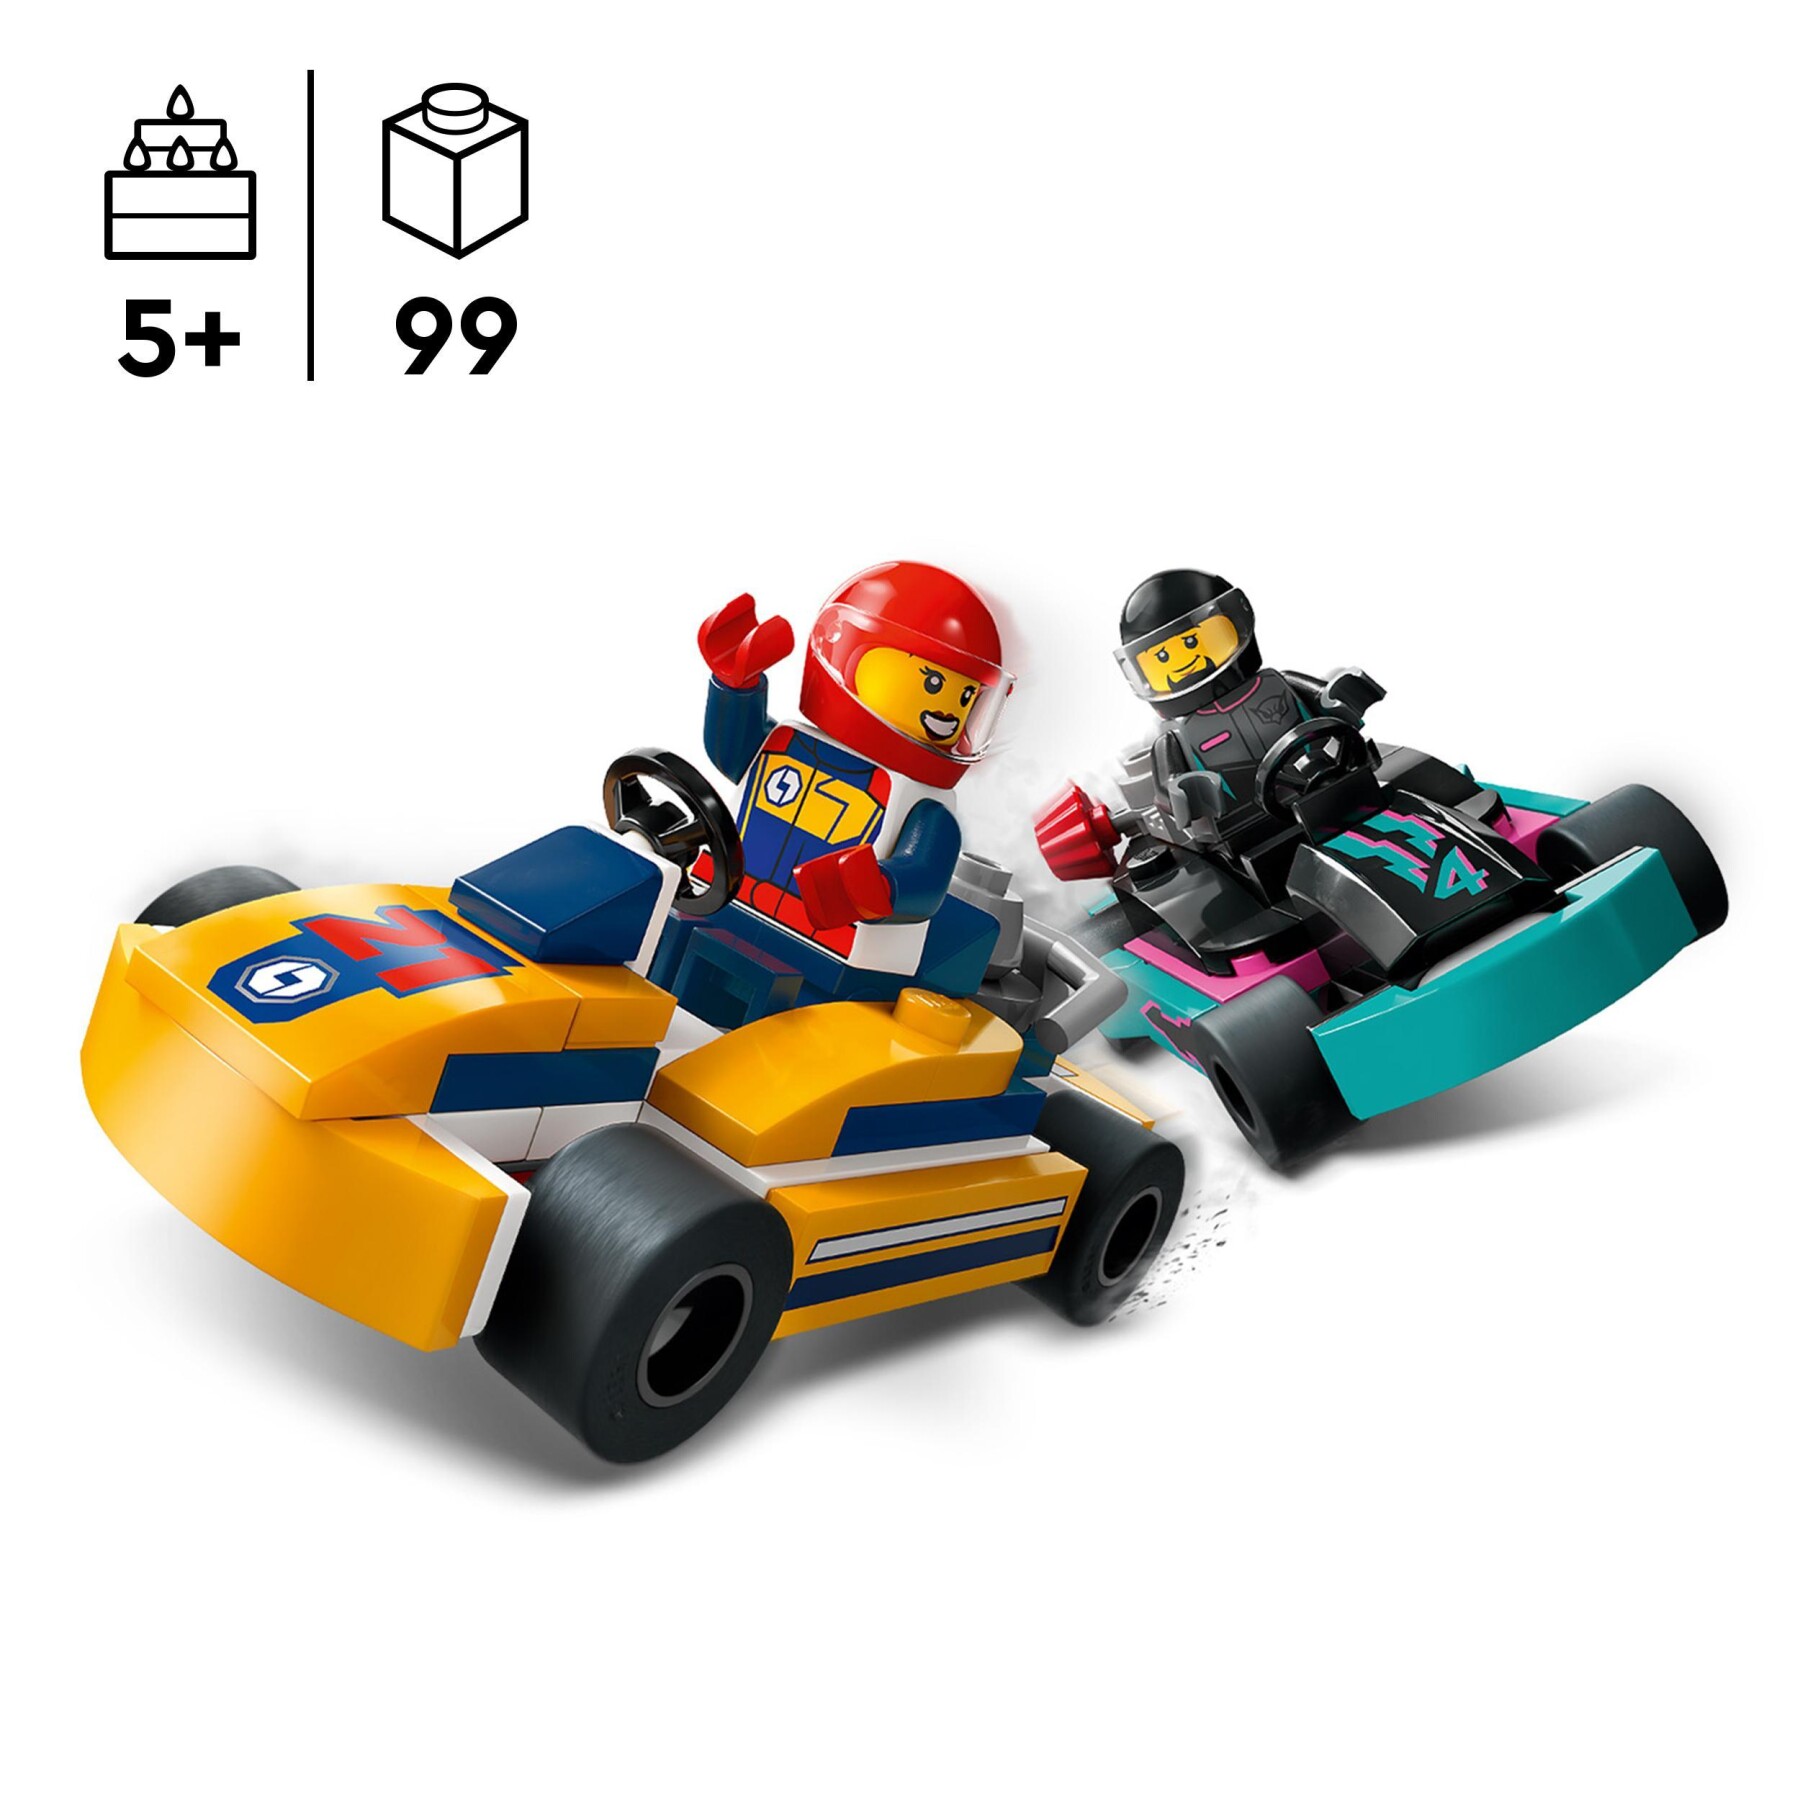 Lego city 60400 go-kart e piloti, modellini da costruire di mini go kart da corsa, veicoli giocattolo per bambini di 5+ anni - LEGO CITY